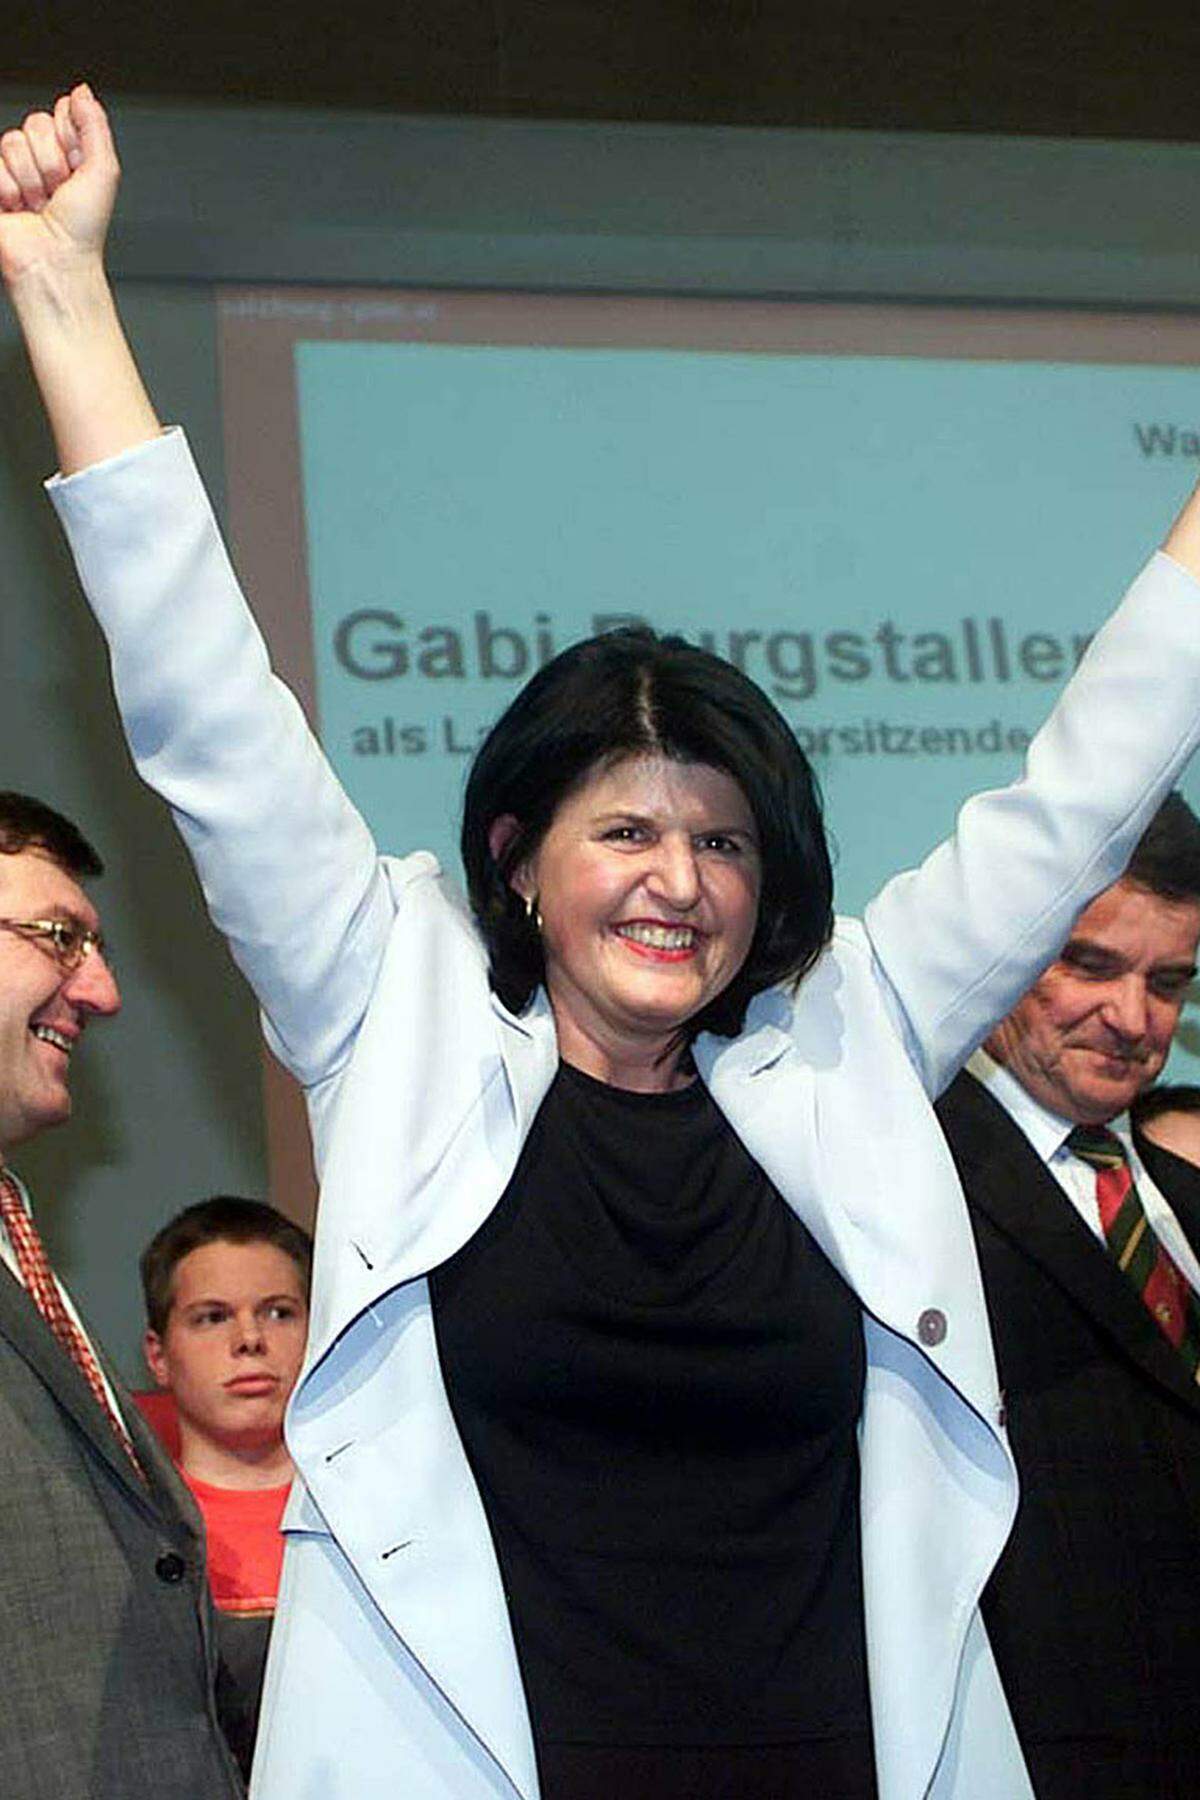 Am 31. März 2001 wurde Gabi Burgstaller mit 98 Prozent Zustimmung zur Landesparteivorsitzenden der Salzburger SPÖ gewählt. Damit war sie die erste Frau an der Spitze einer sozialdemokratischen Landesorganisation in Österreich.